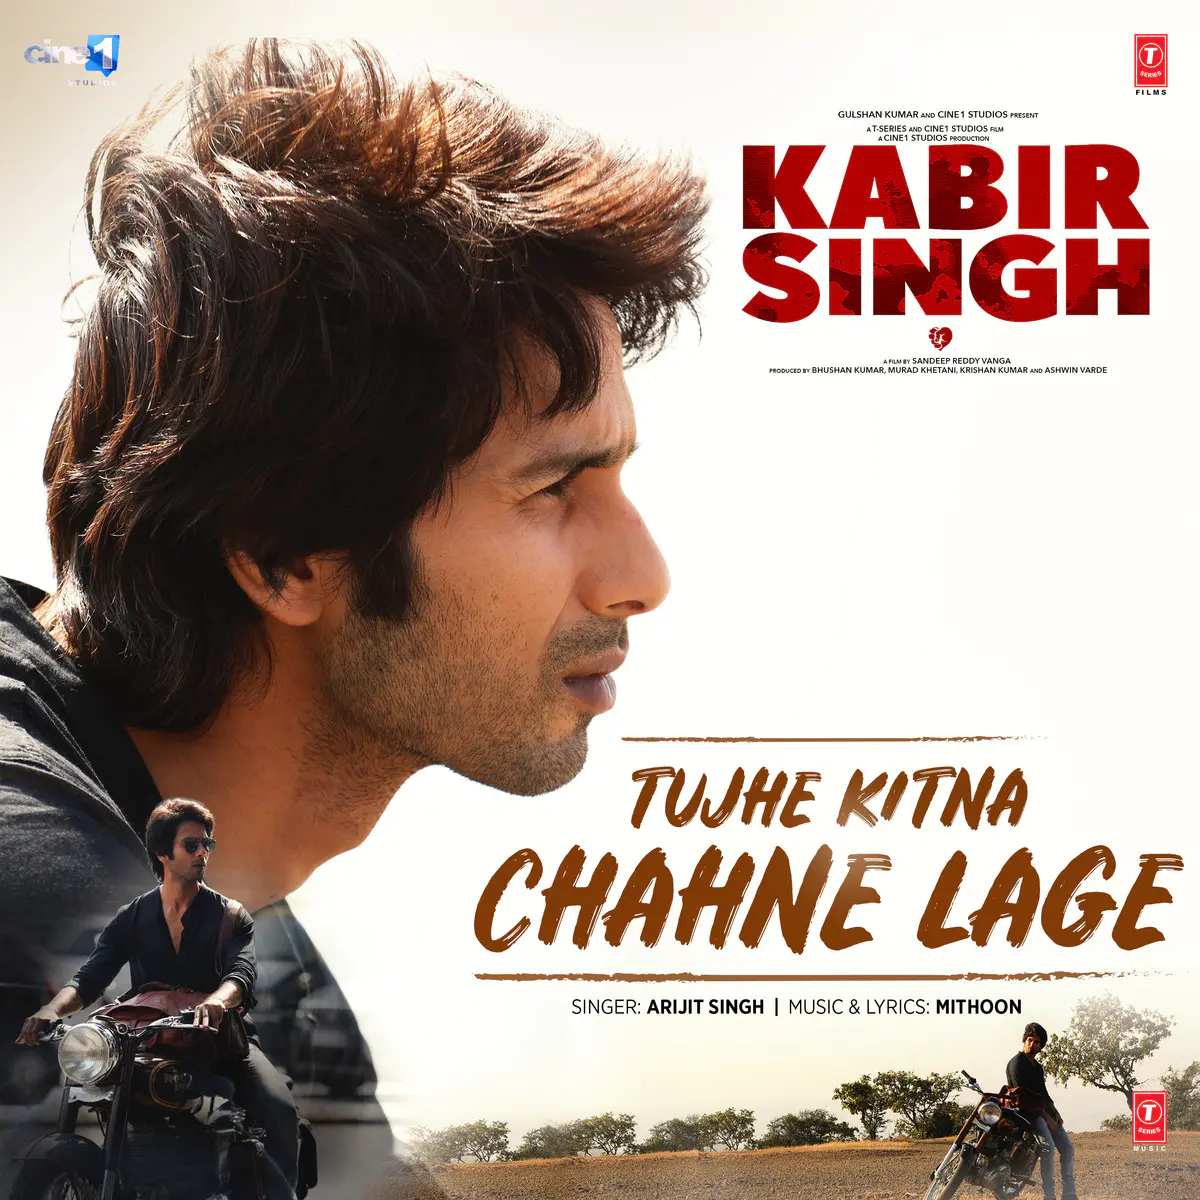 तुझे कितना चाहने लगे Tujhe Kitna Chahne Lage lyrics in Hindi and English